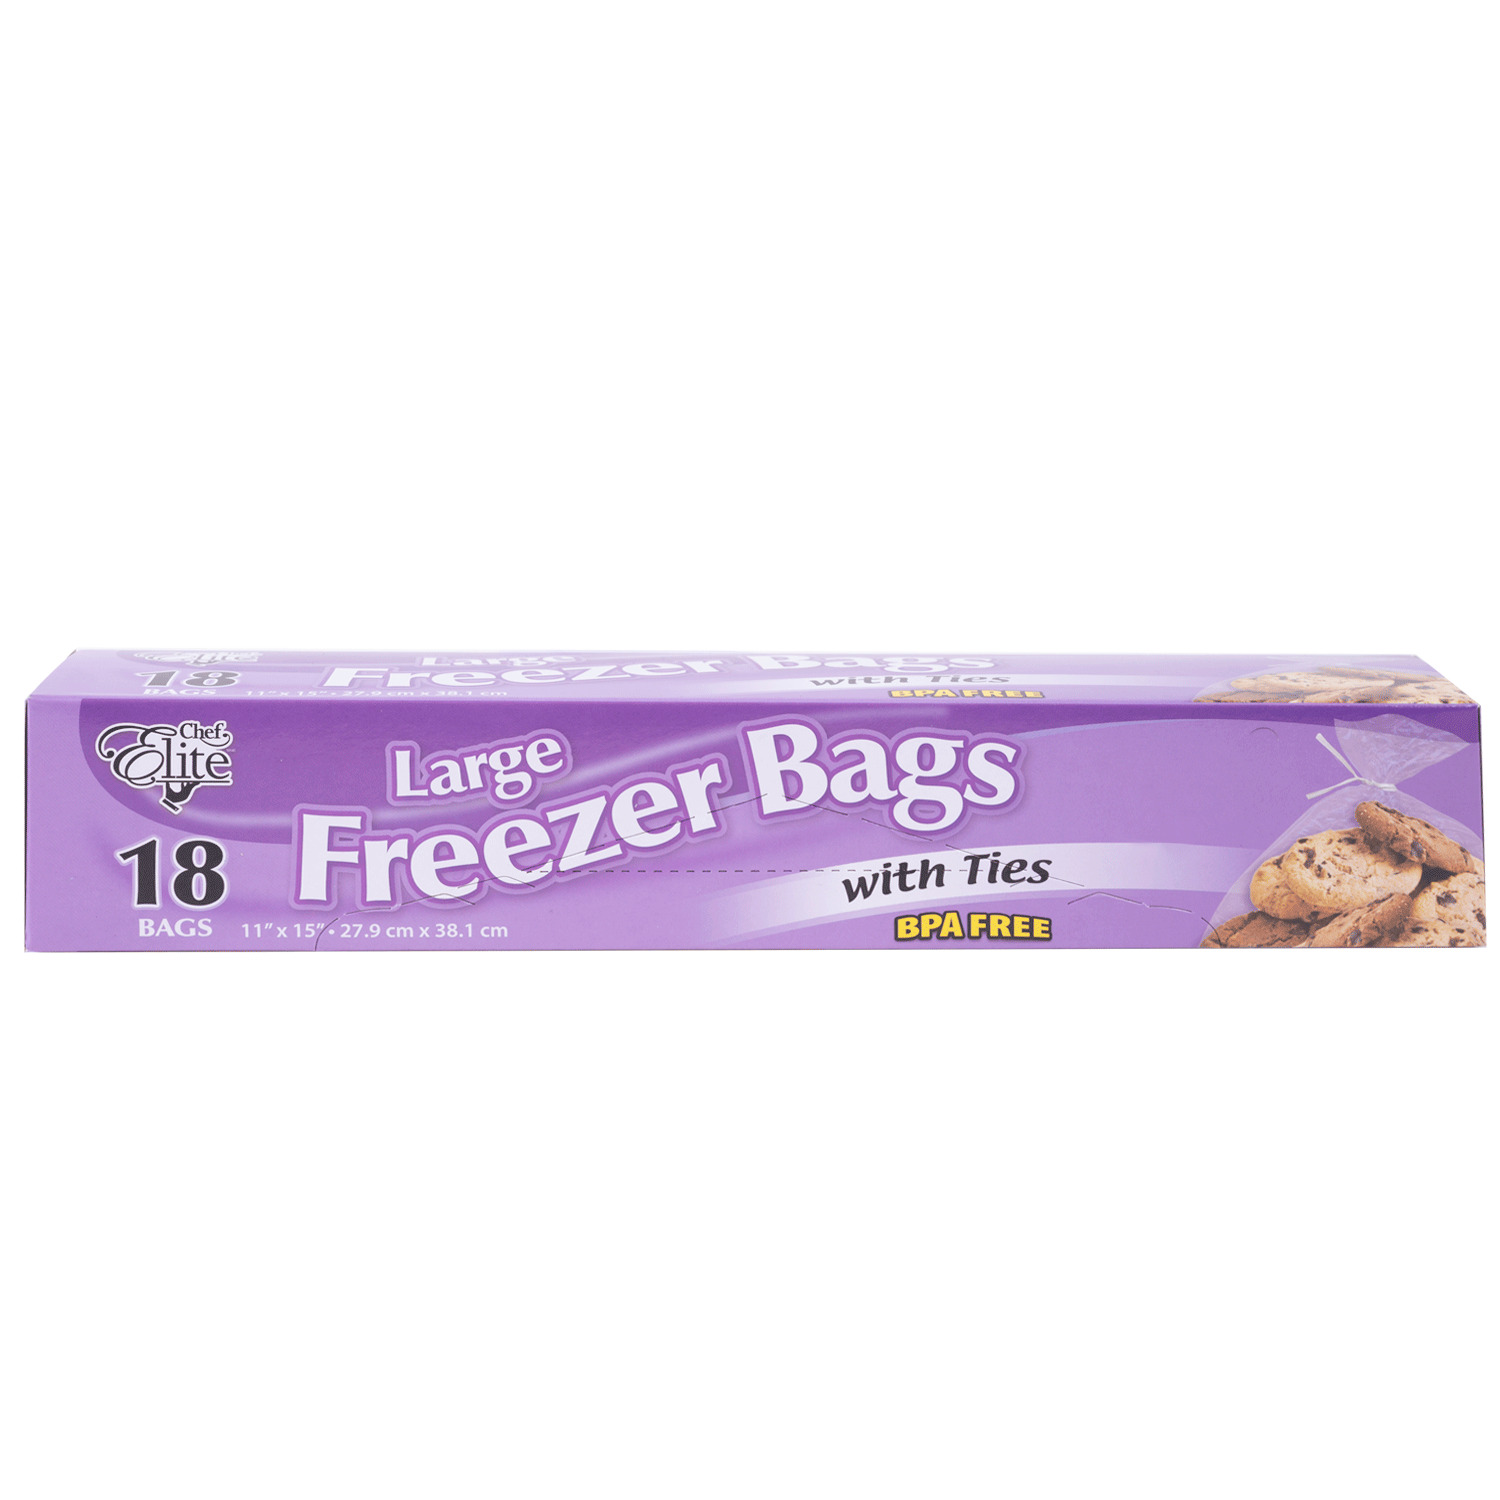 Freezer Bags & Ties